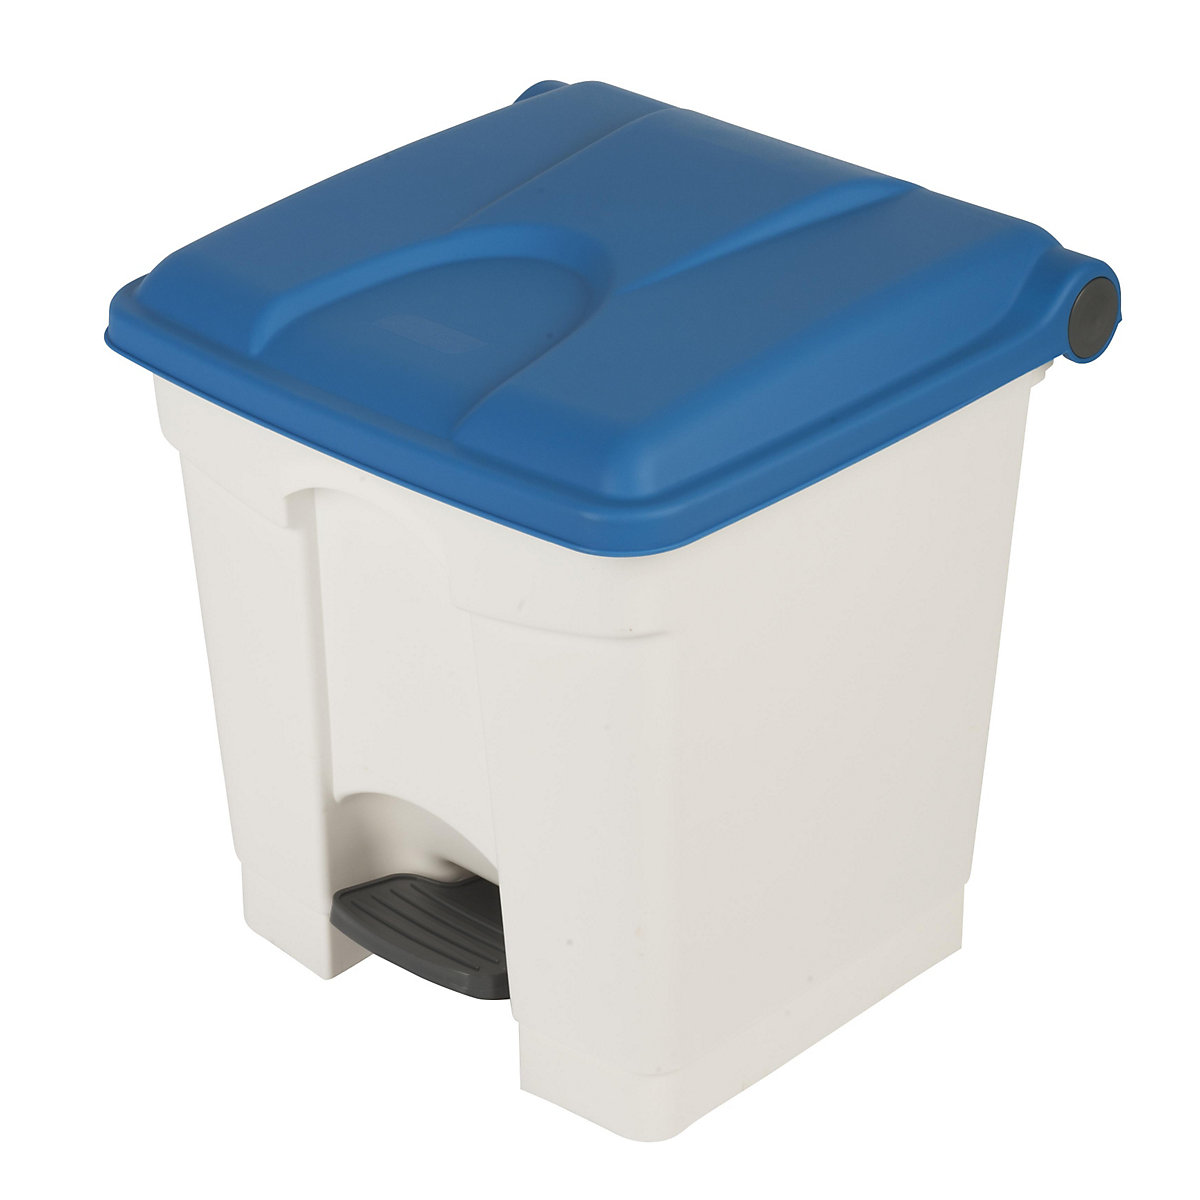 Colector de residuos con pedal, capacidad 30 l, A x H x P 410 x 435 x 400 mm, blanco, tapa azul-8